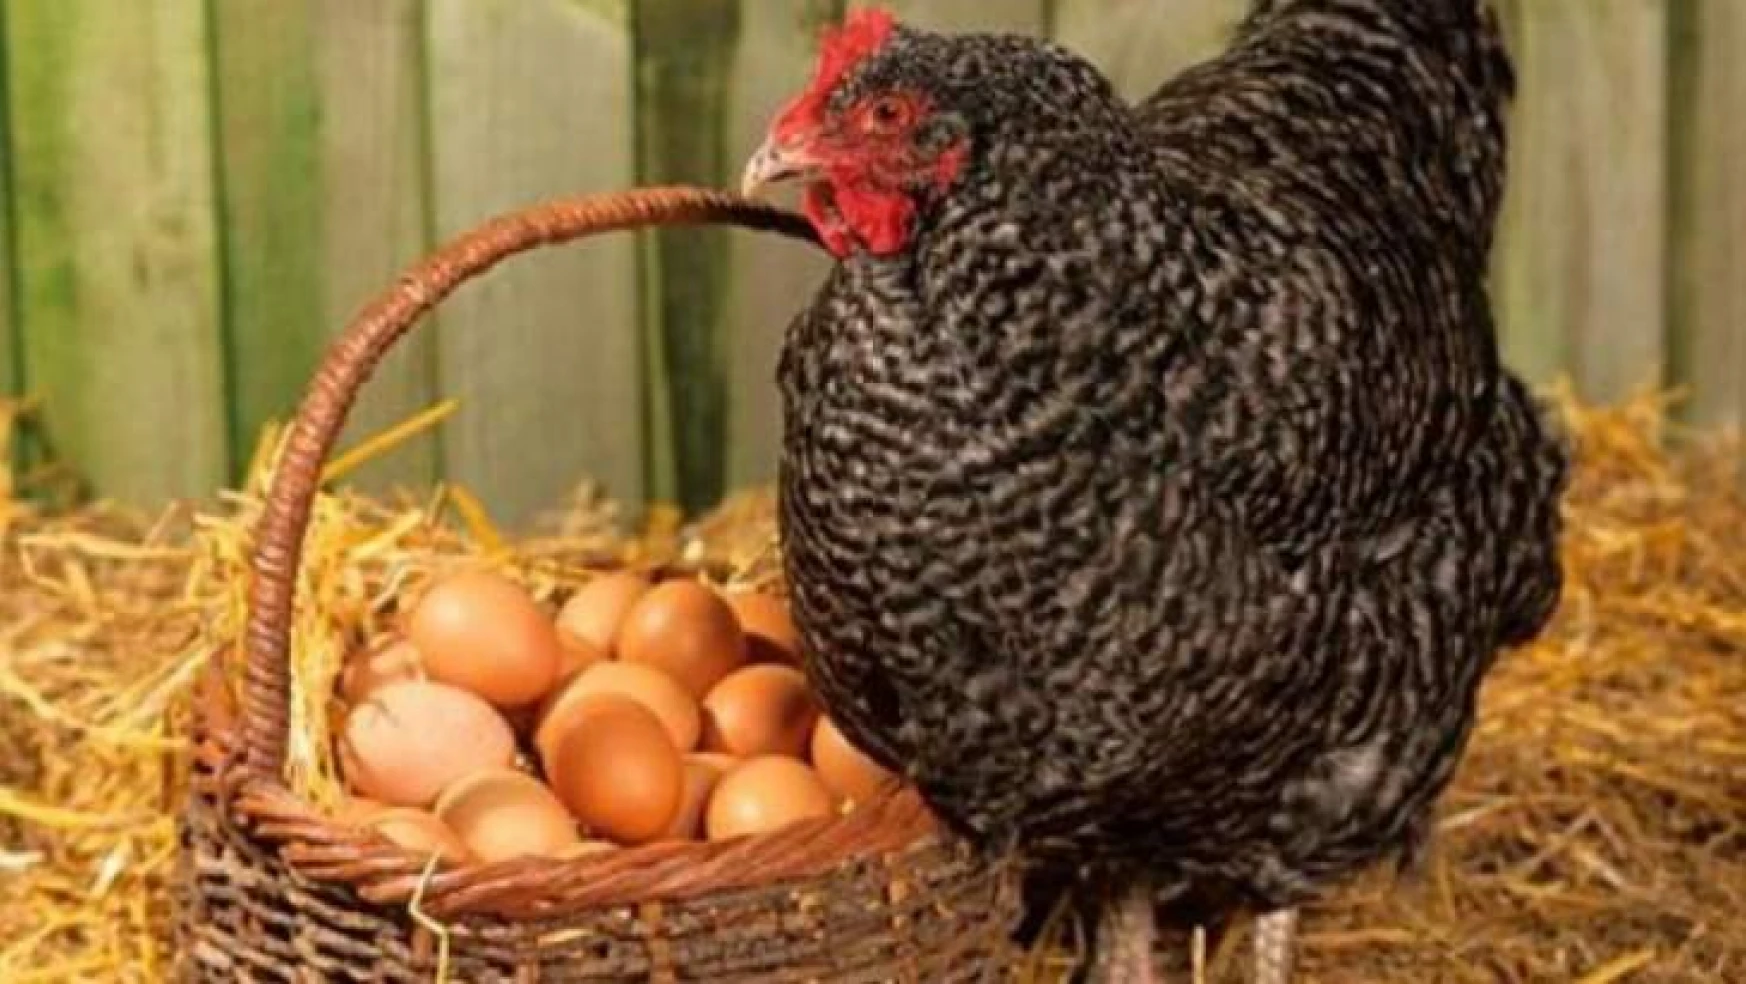 Ülkemizde tavuk yumurtası üretimi 1,7 milyar adet olarak gerçekleşti.